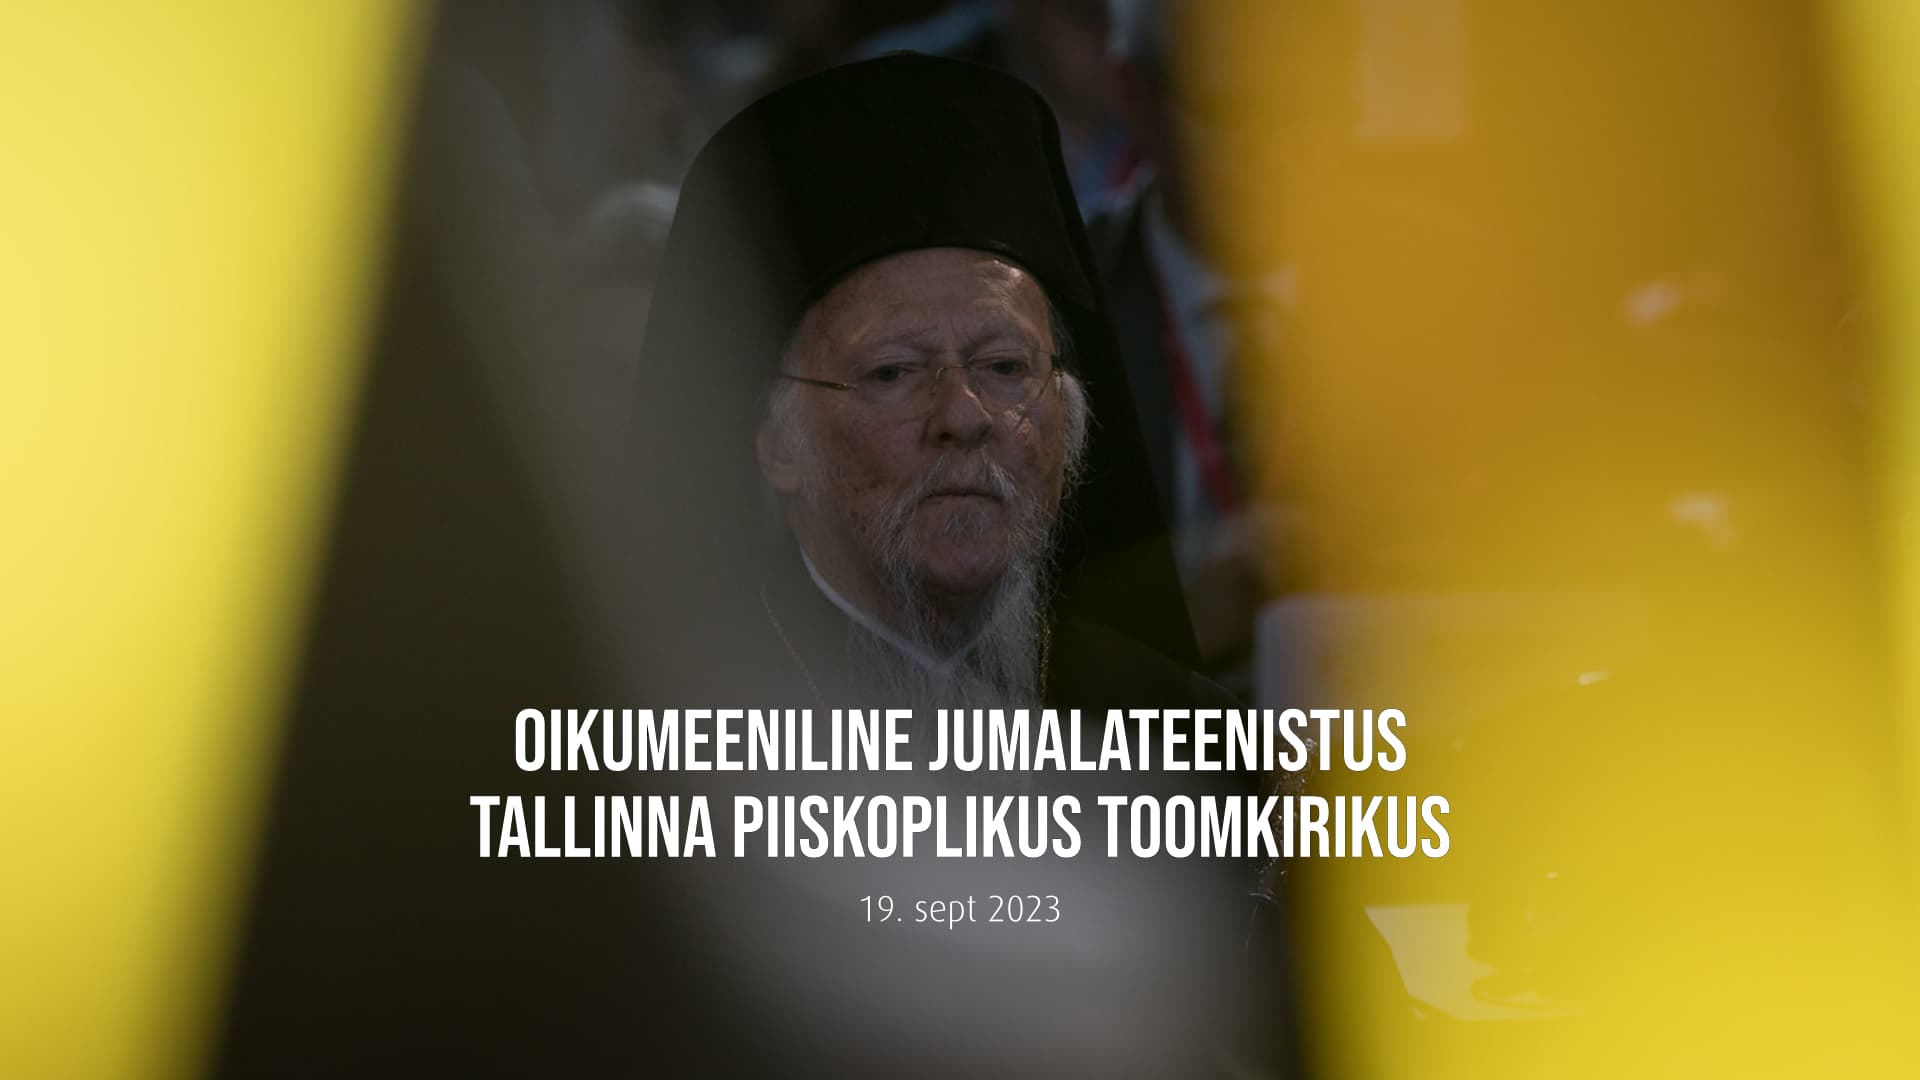 Teisipäeval toimub Tallinna toomkirikus oikumeeniline palvus, kus osaleb ka patriarh Bartolomeus